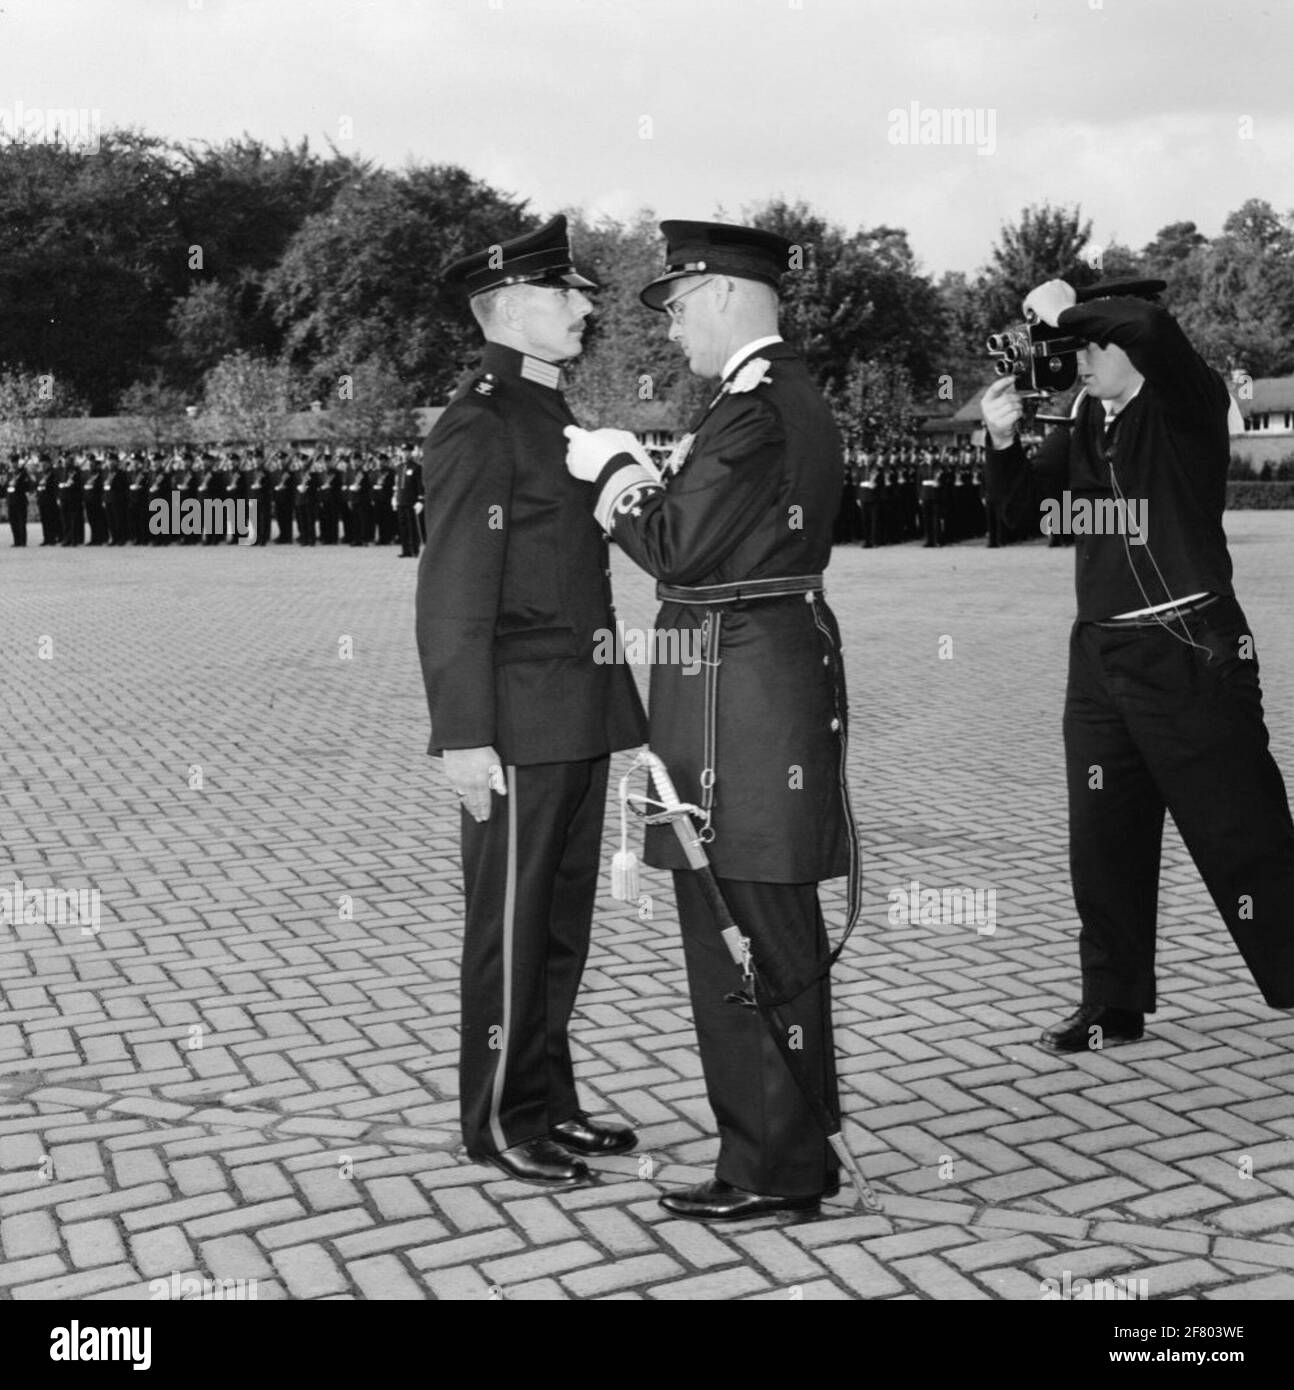 Beim Marines Corps, in der Van Braam Houckgeestkazerne (VBHKAZ) in Doorn, findet eine Medaillenübergabe statt. Der Kommandant der seetüchtigen Streitkräfte (BDZ) Vize-Admiral (VADM) A.H.J. Van der geschätzte Olivier kneift das Kreuz von Merge (kv) bei der Klasse Marinier der 1e (Marn. 1) C.L. Valentinstag. Rechts im Bild filmt der korporale Flugzeugfotograf (KplvgMRF) Jos van Haarlem (1933-2013), der später als erster in den neuen Special-Service-cineaEast-Dienst gehen sollte. Dieses Verdienstkreuz wird "wegen mutiger und politischer Maßnahmen in Niederländisch-Neuguinea" vergeben. Stockfoto